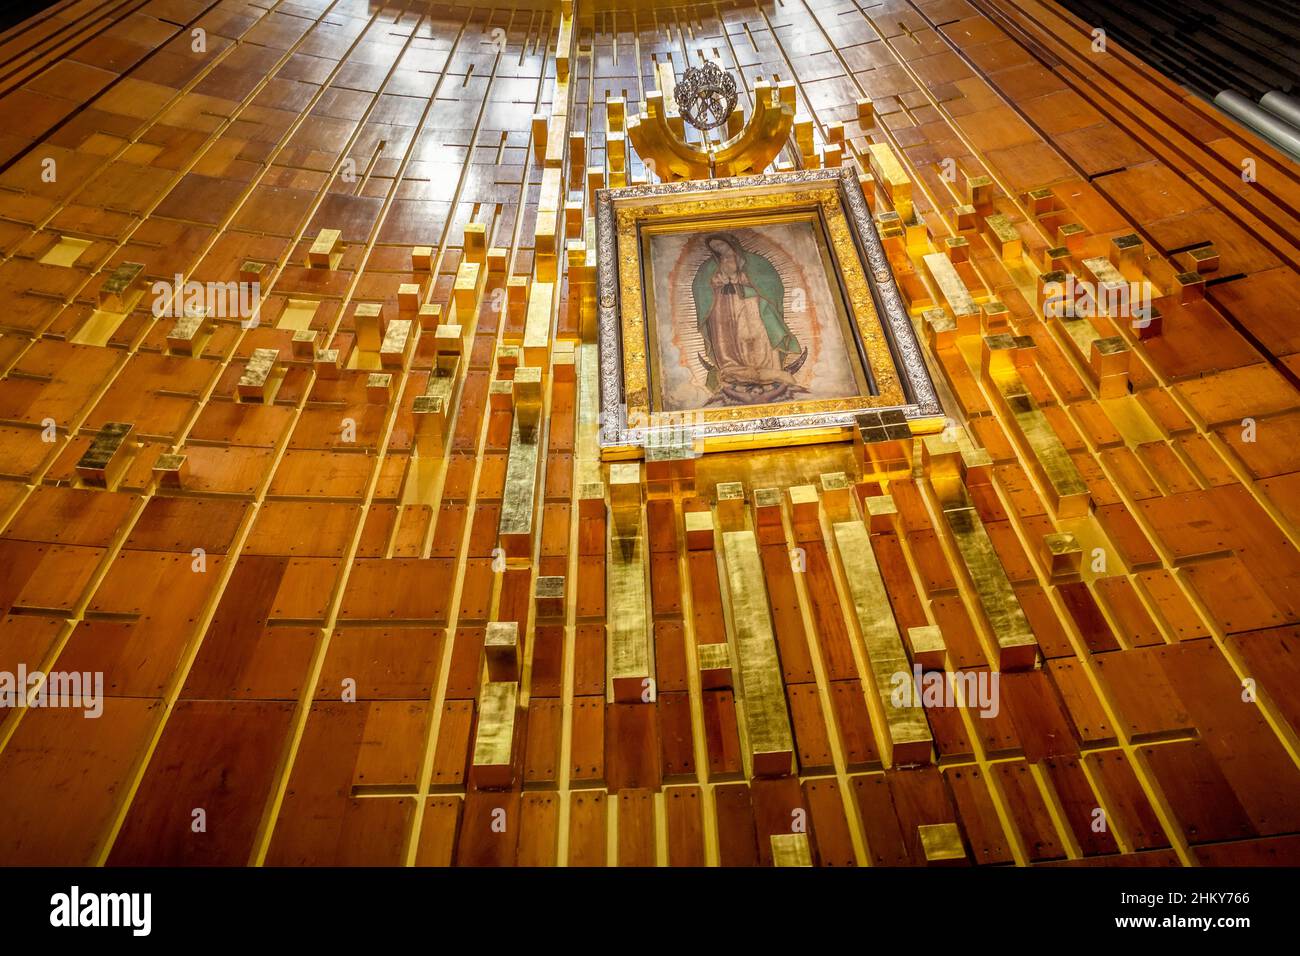 Imagen de Virgen de Guadalupe. Nueva Basílica de Nuestra Señora de Guadalupe, Iglesia católica romana. Ciudad de México. América del Norte Foto de stock